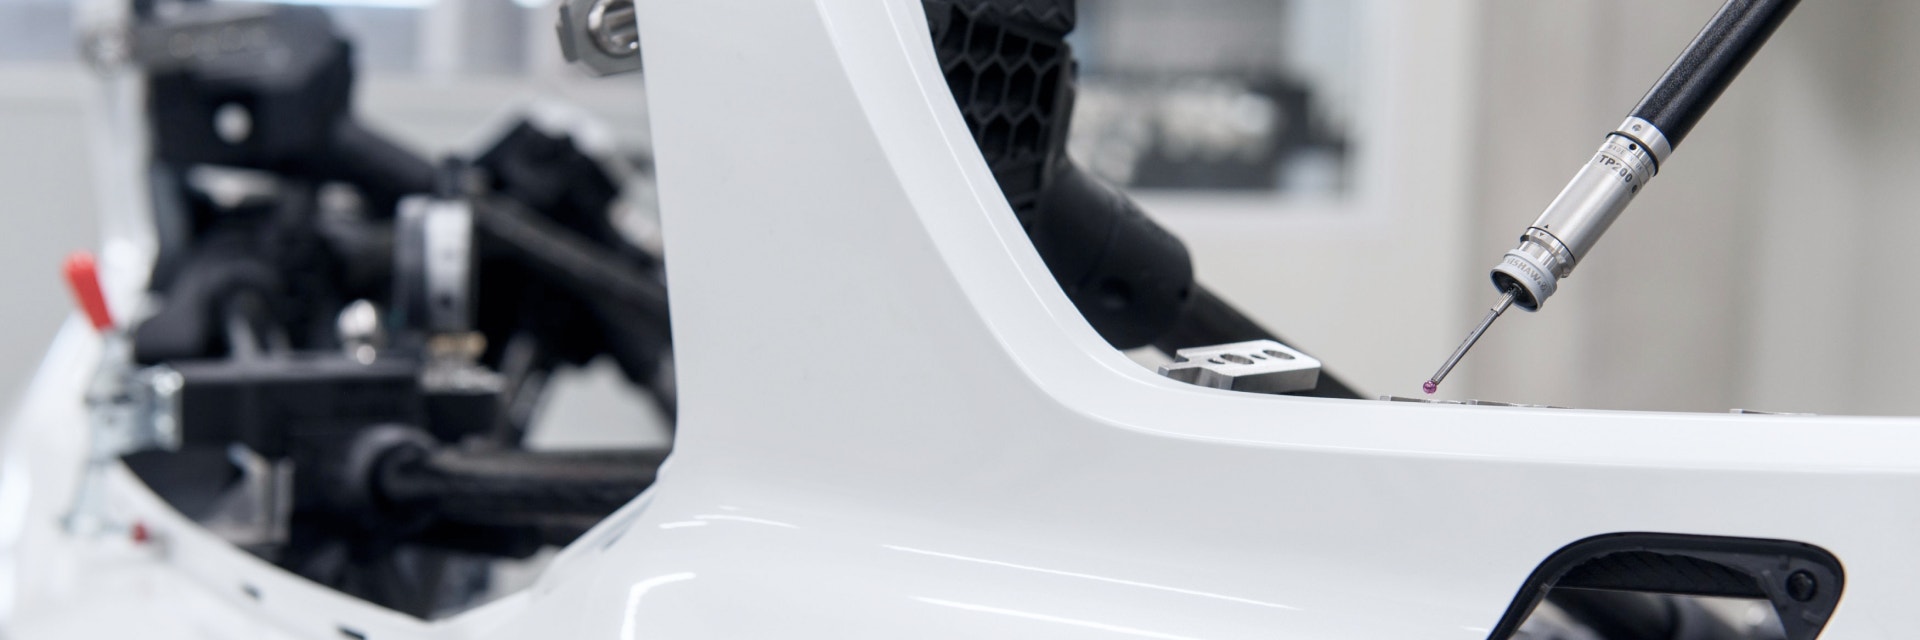 생산 중인 자동차의 흰색 프레임에 가까운 뾰족한 자동차 점검 장치